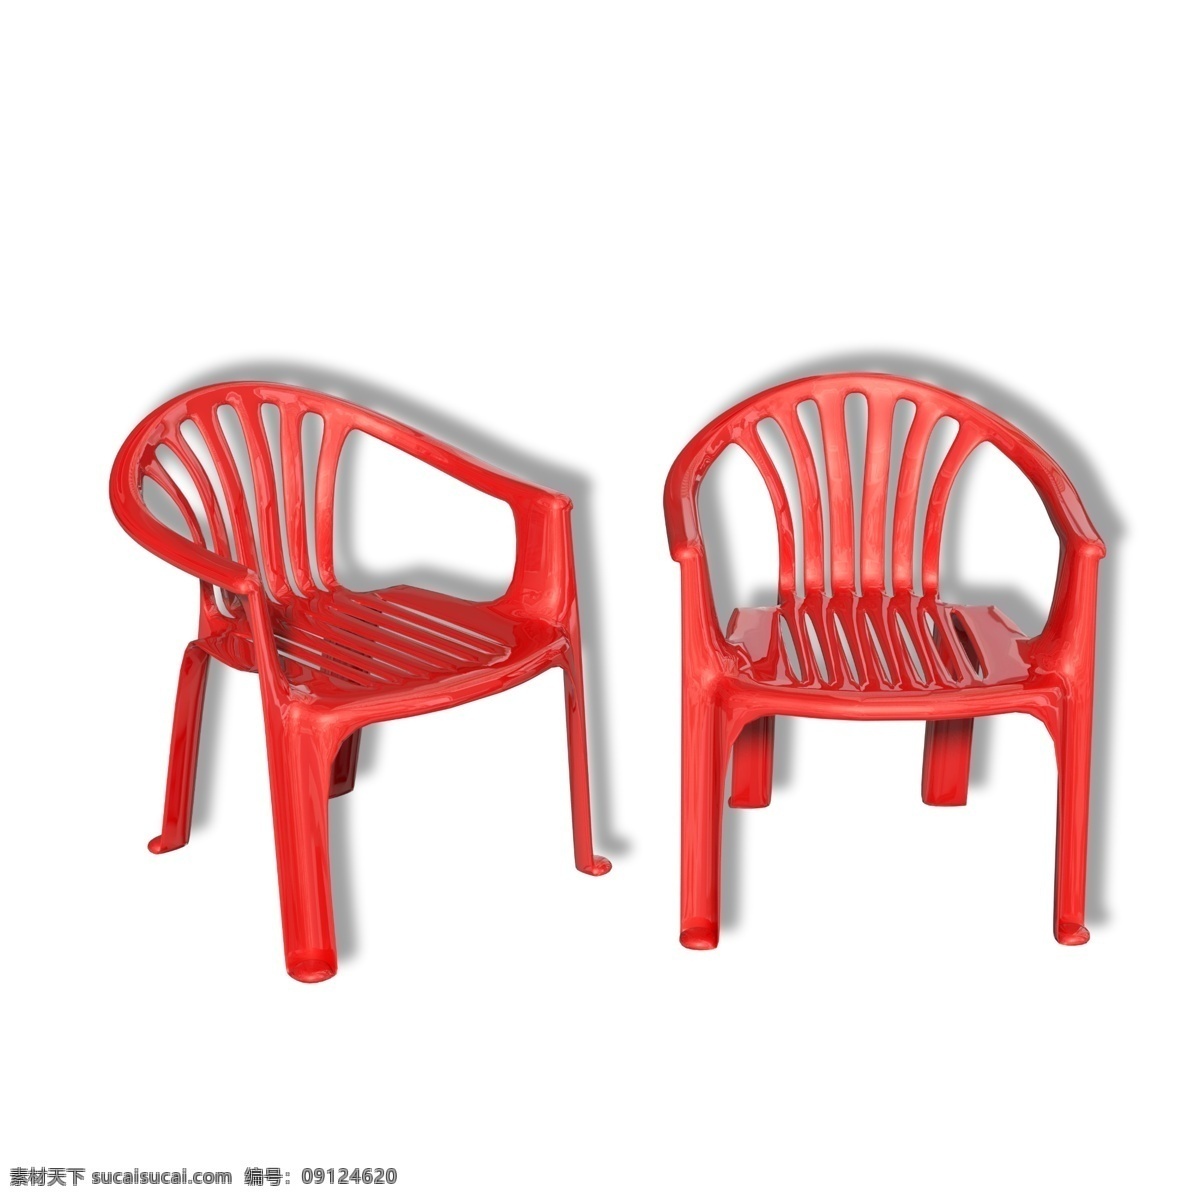 红色 塑料 休闲 椅子 休闲椅 圈椅 靠椅 家具